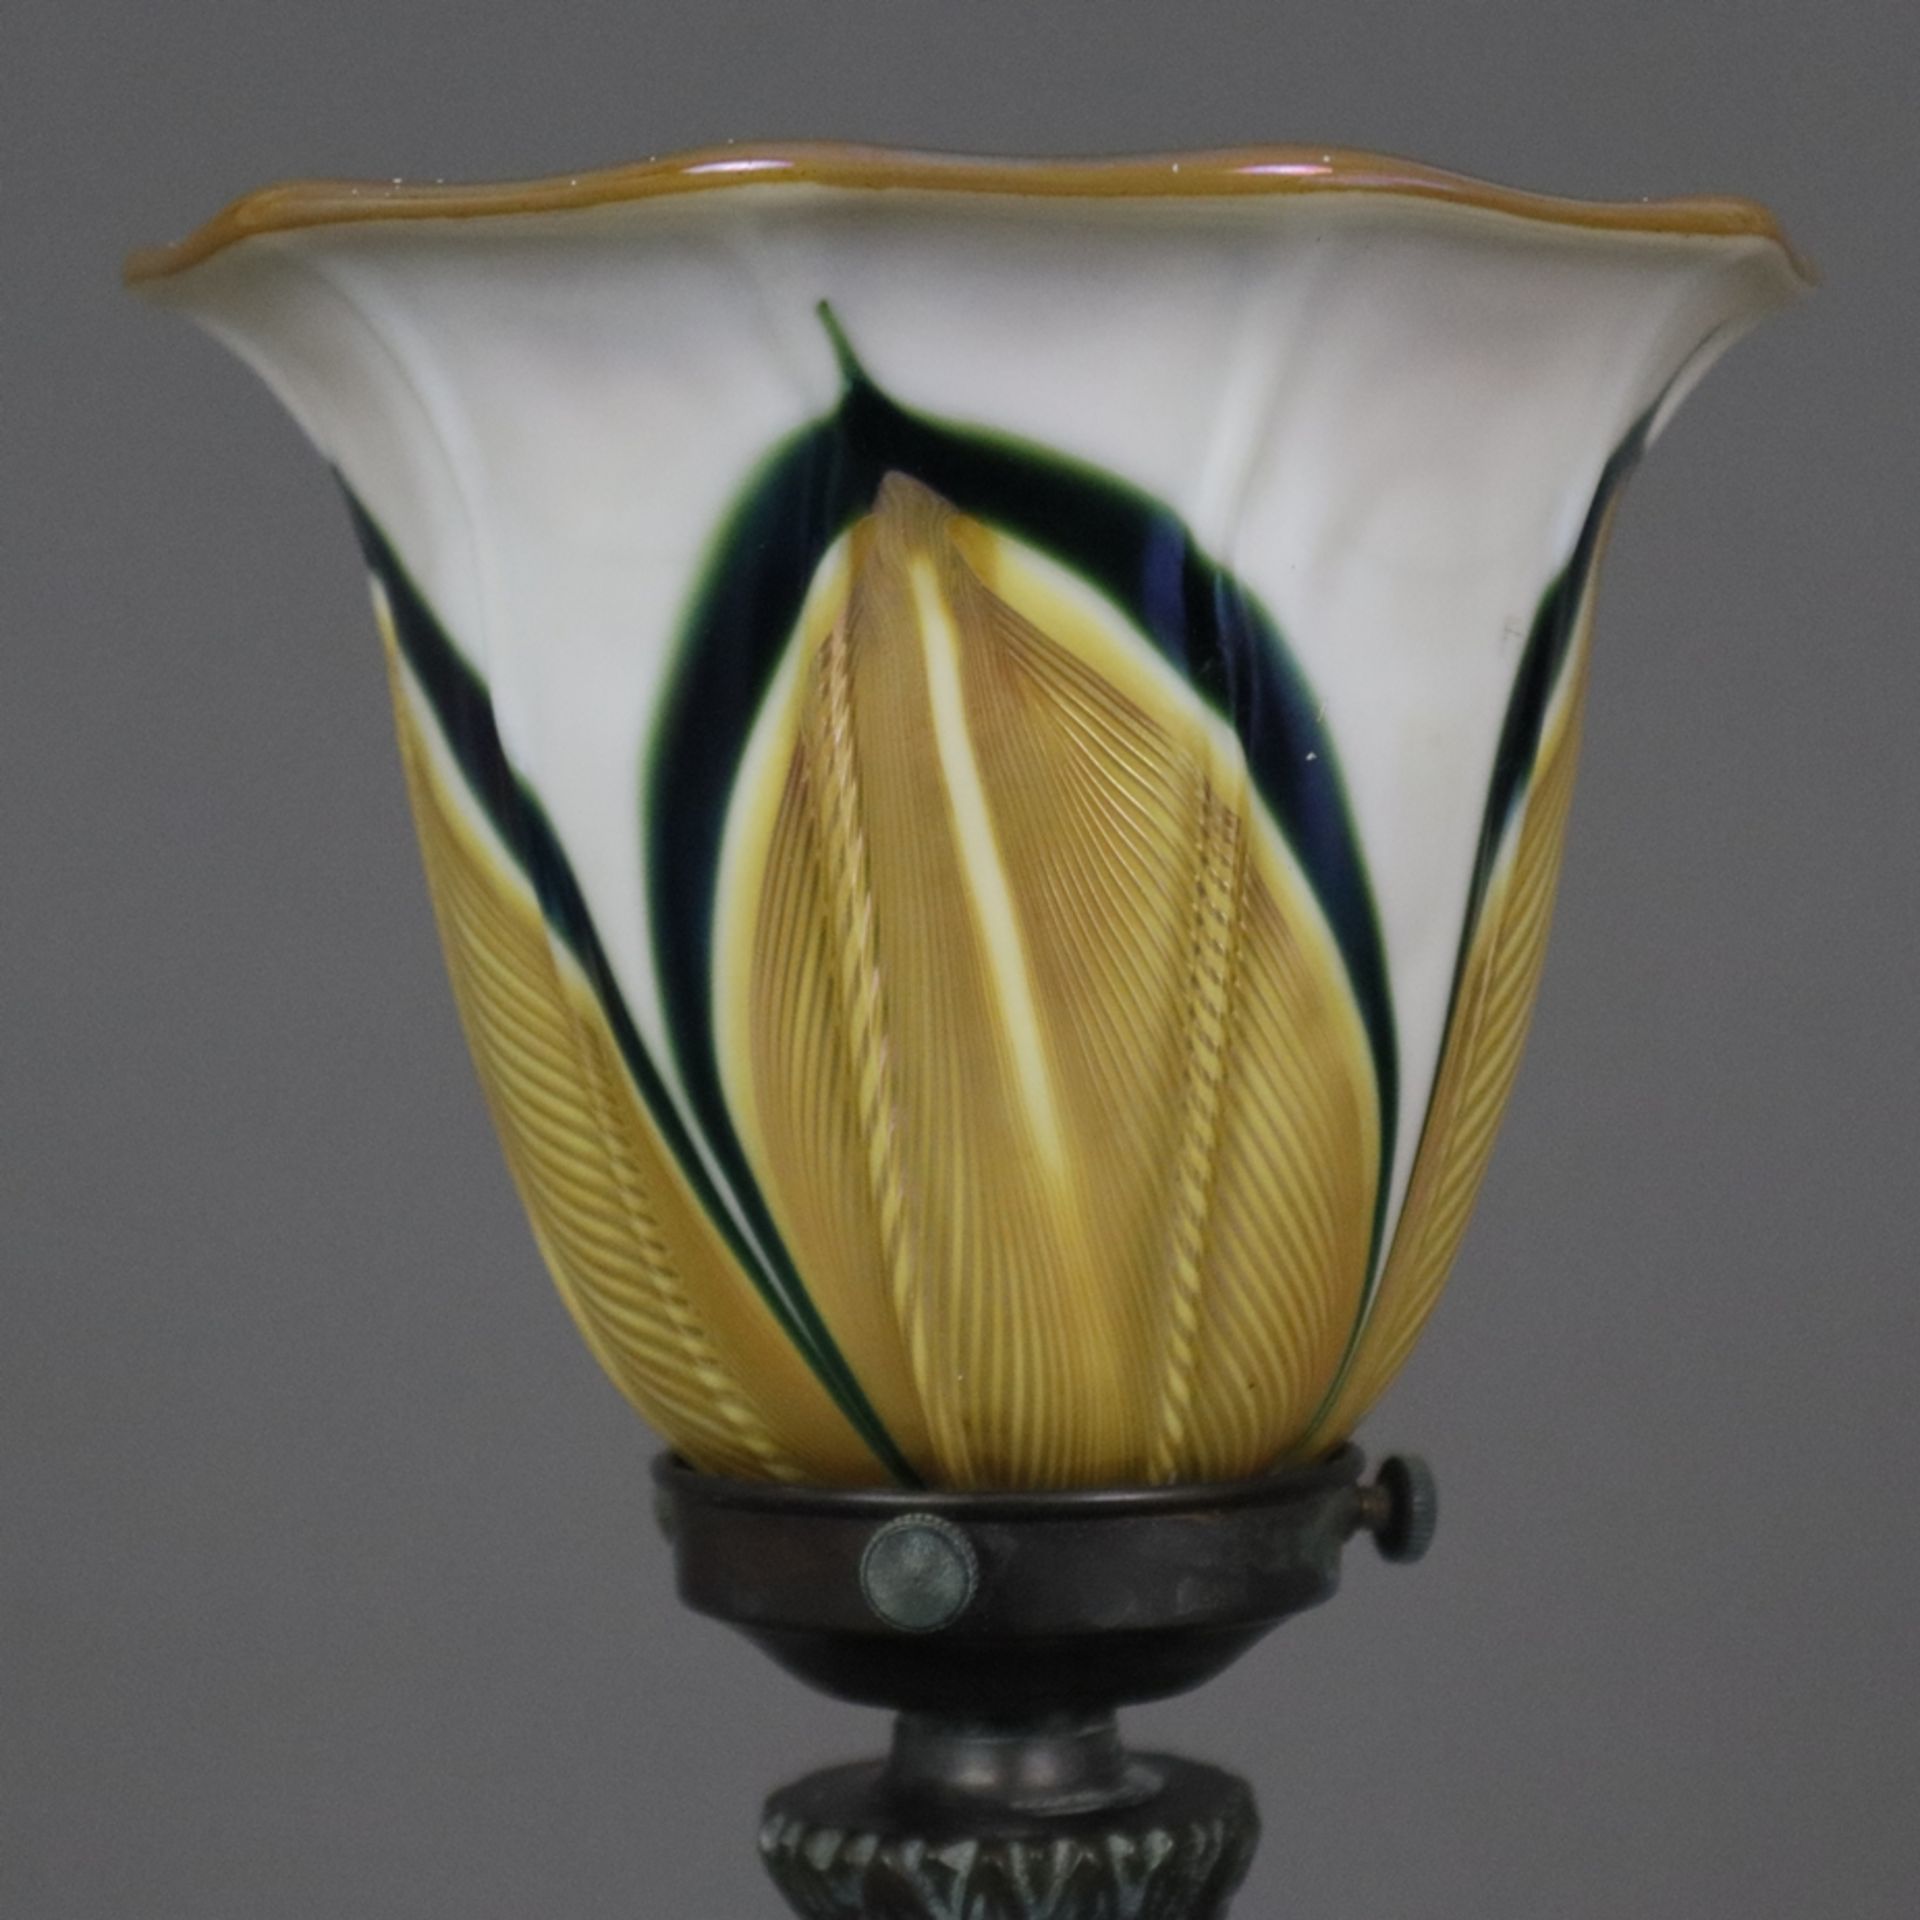 Jugendstil Tischlampe - um 1900/10, floral reliefierter Metallfuß, bronziert, glockenförmiger Glass - Bild 3 aus 7